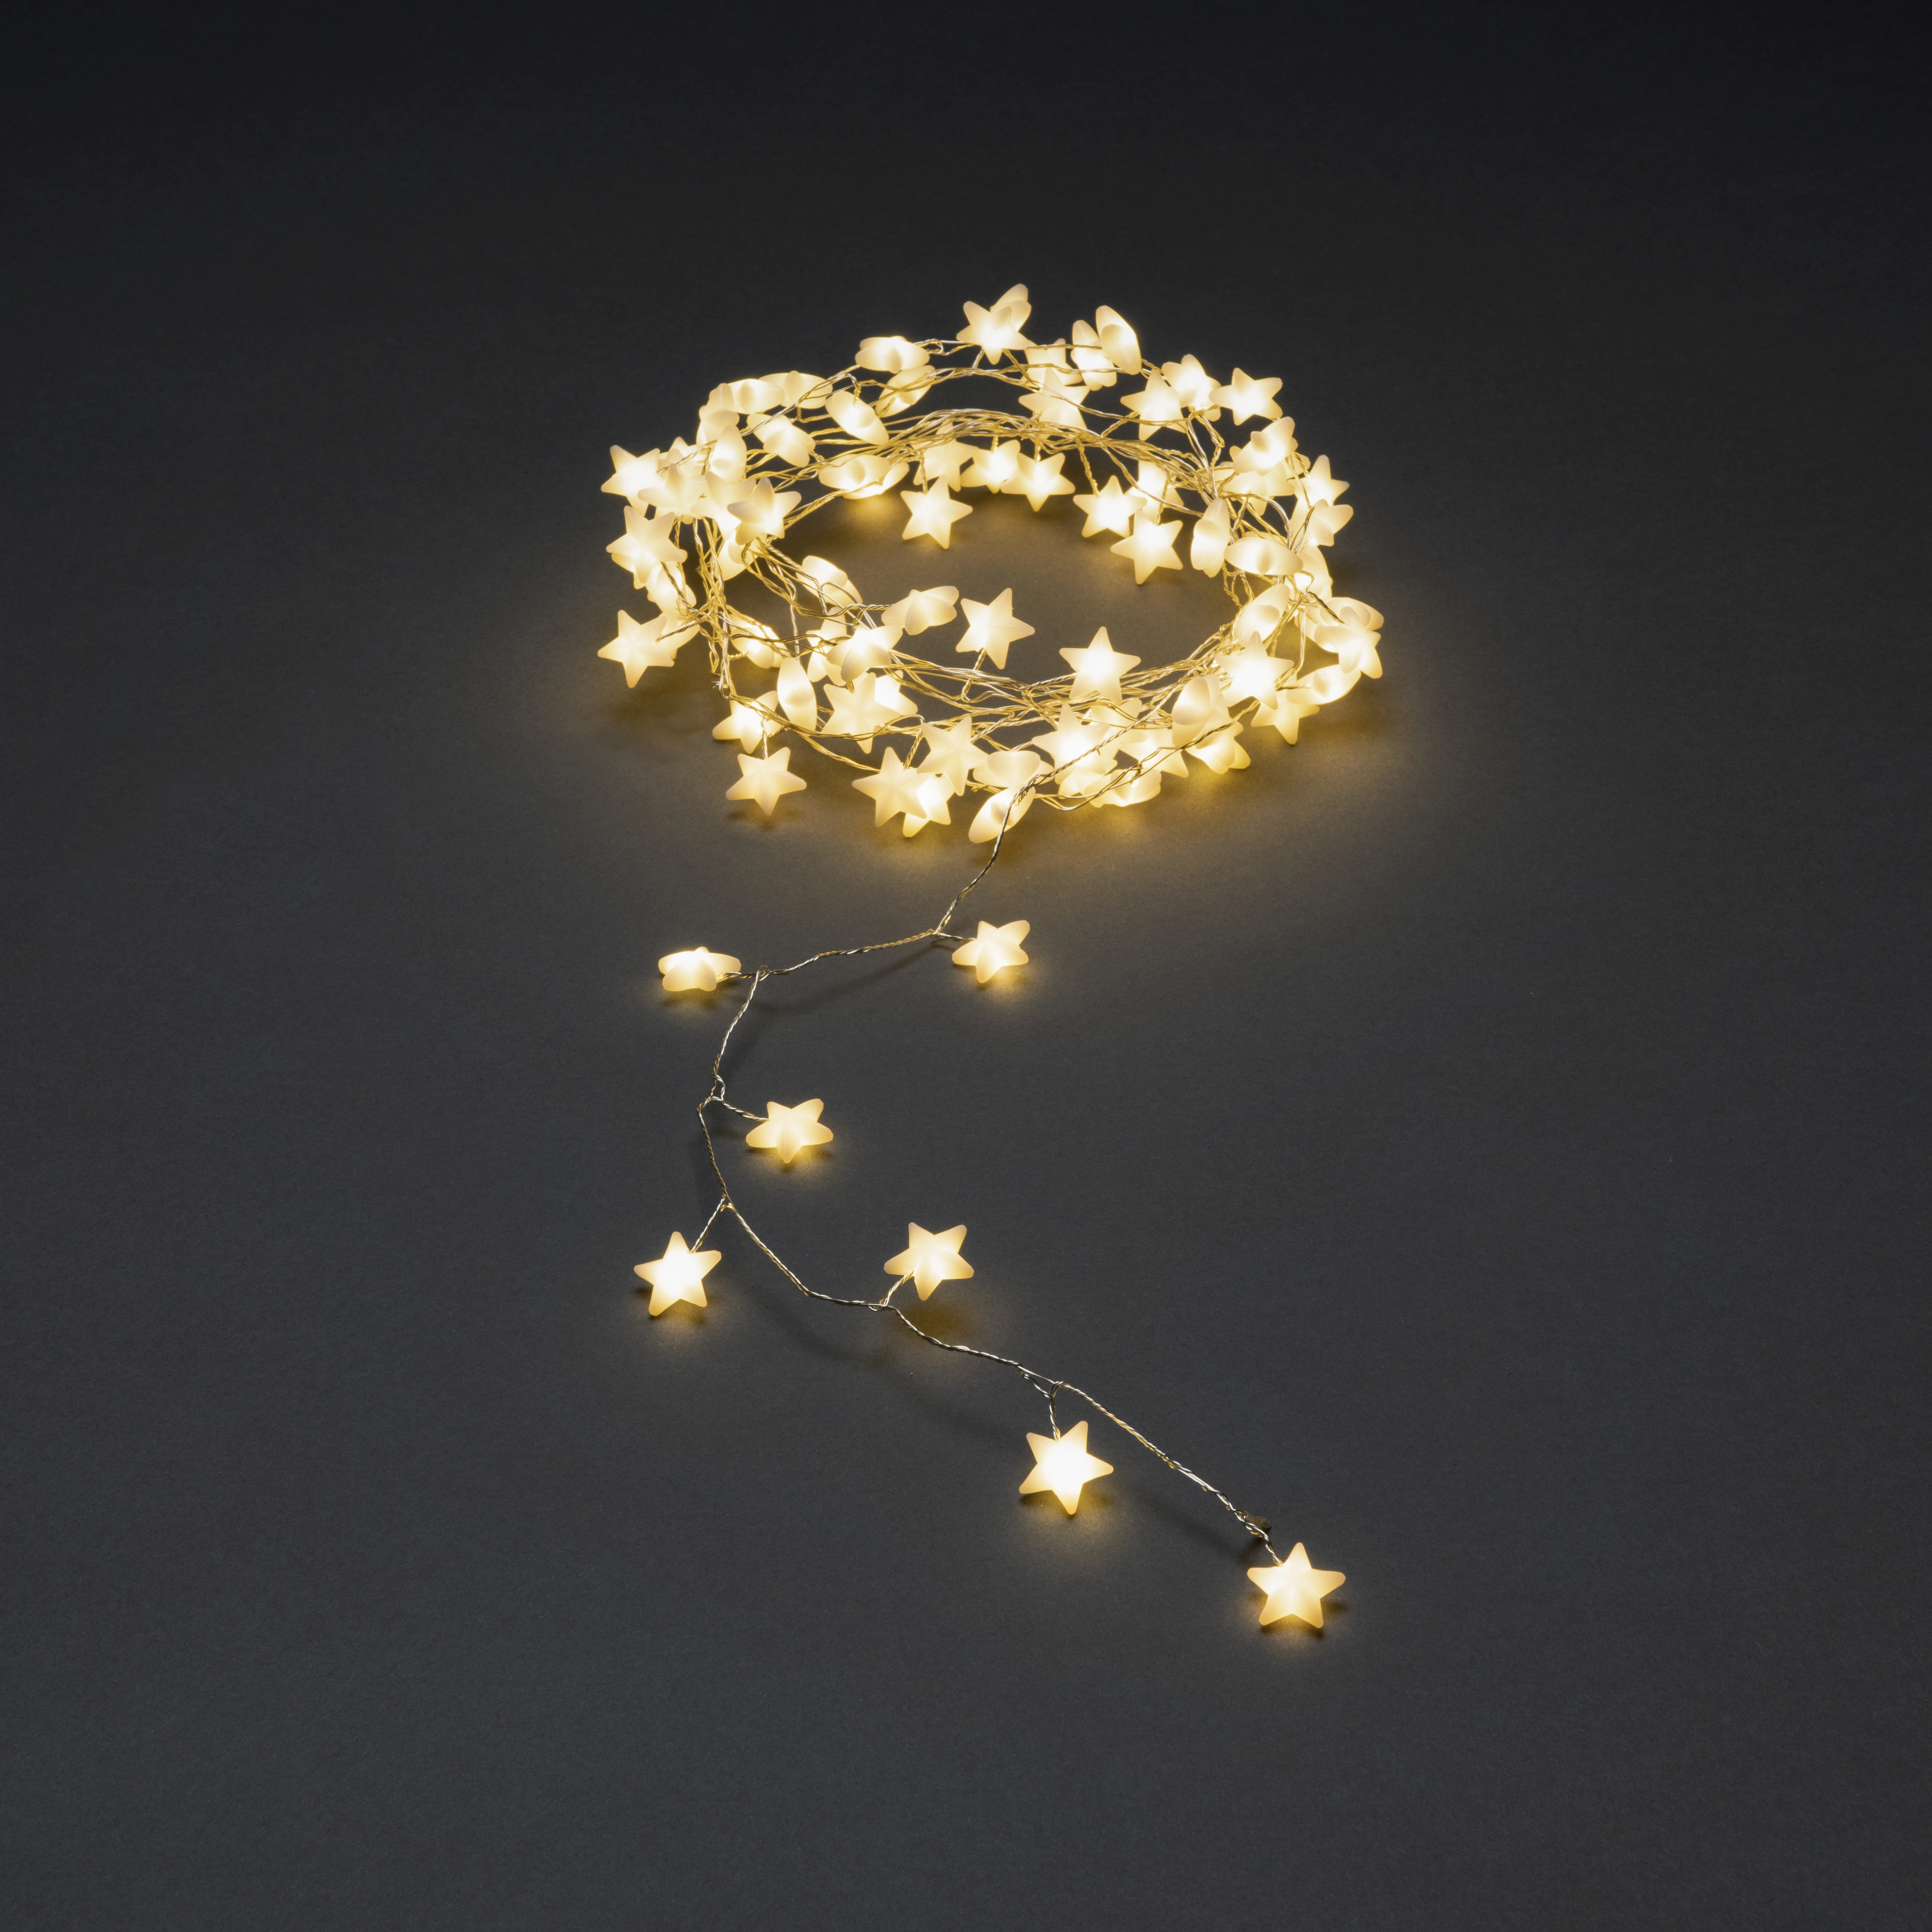 Konstsmide LED Sternenlichterkette 90 Warm-Weiße Dioden kaufen bei OBI